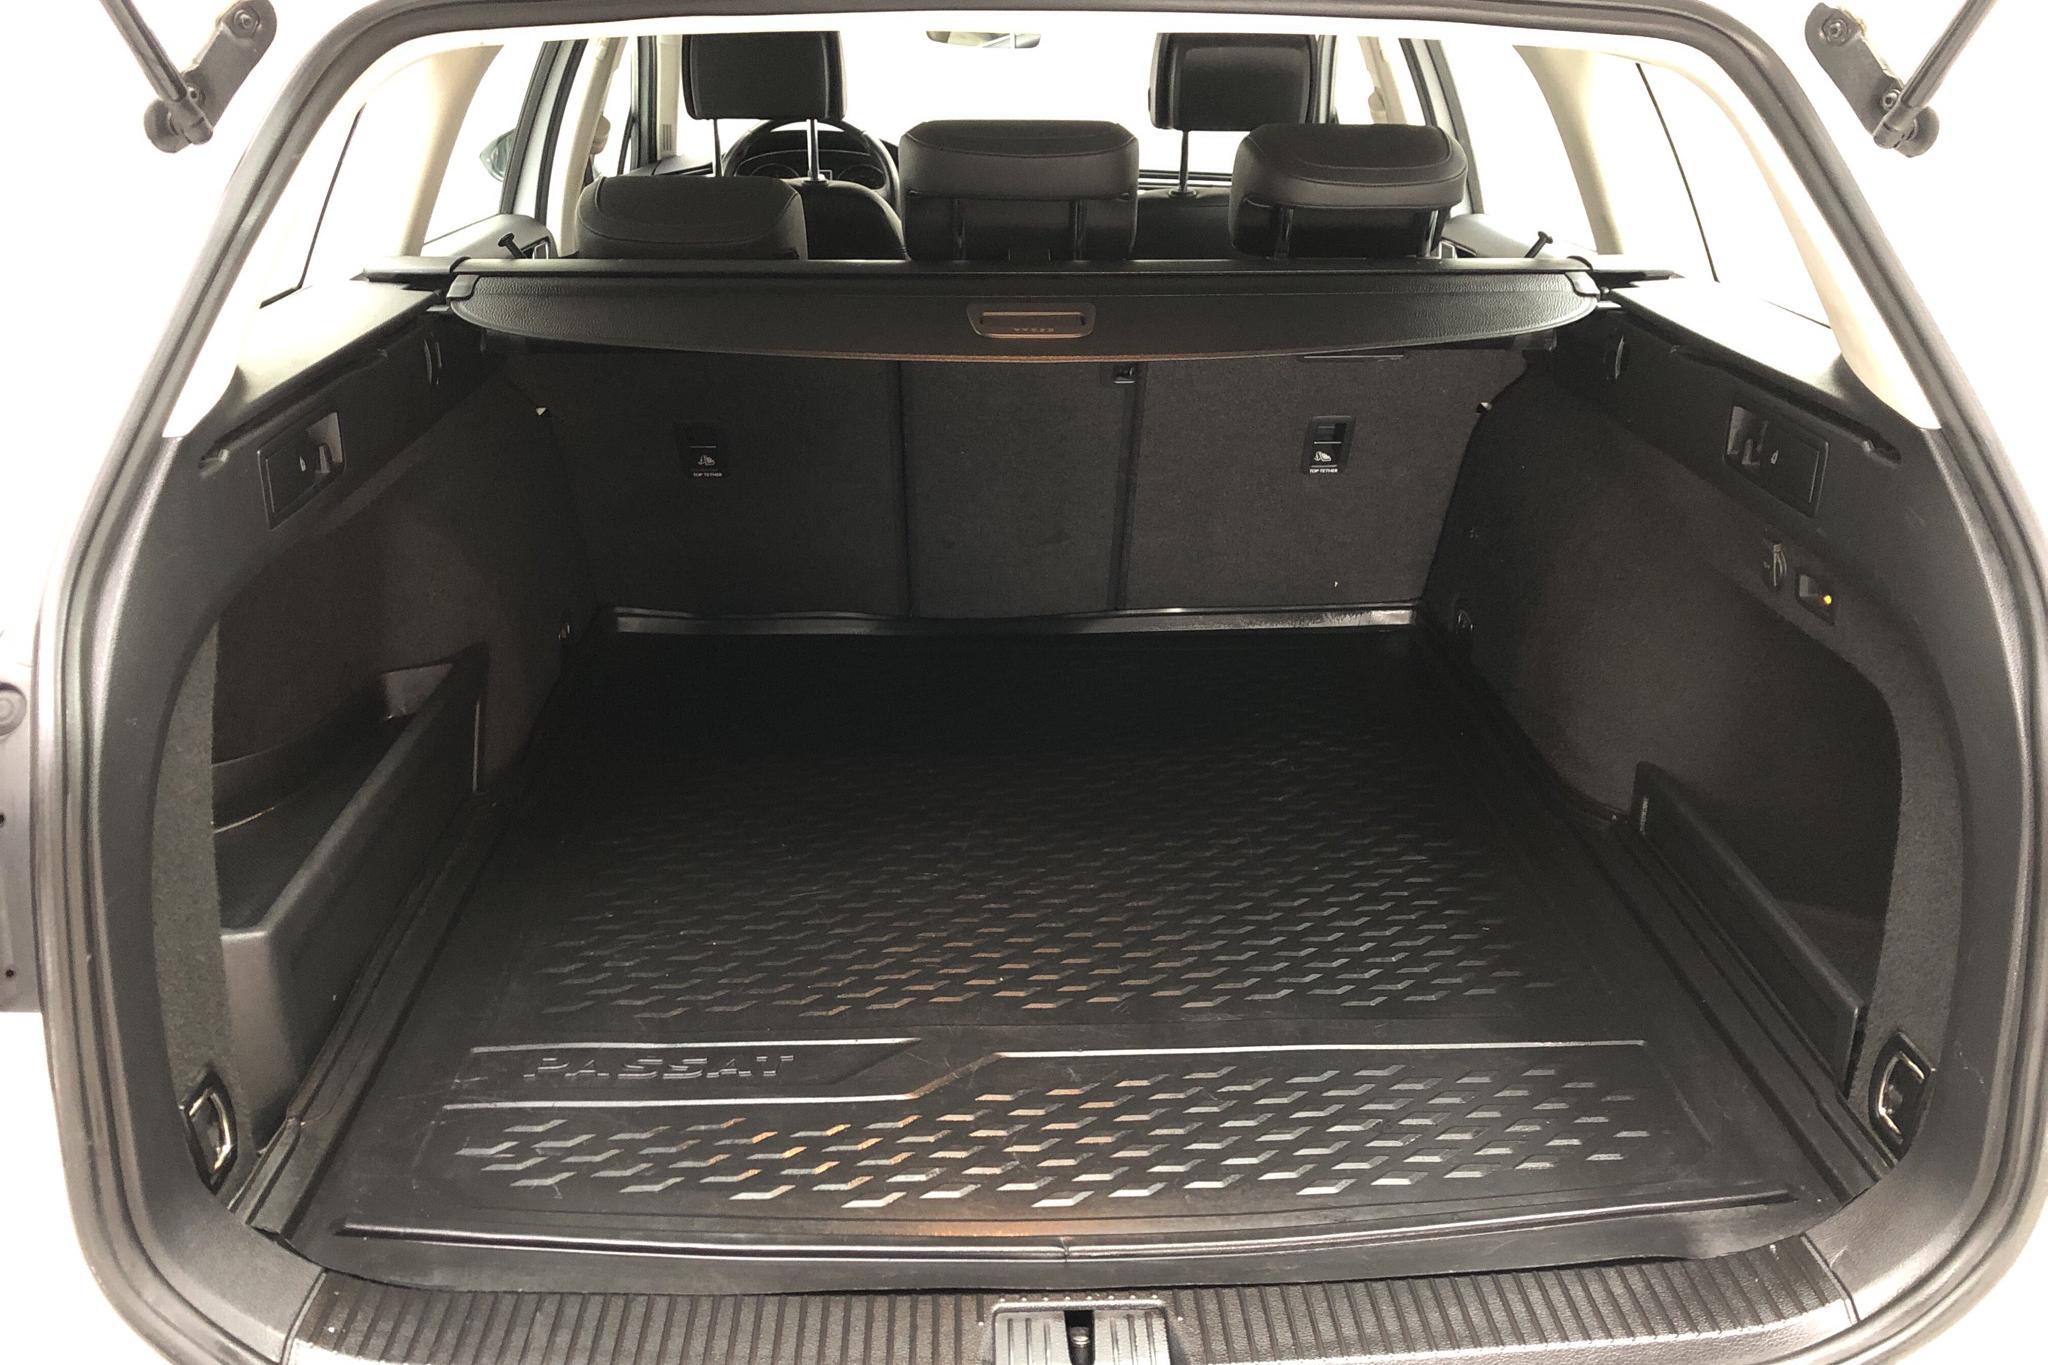 VW Passat 2.0 TDI Sportscombi 4MOTION (190hk) - 11 202 mil - Automat - vit - 2017